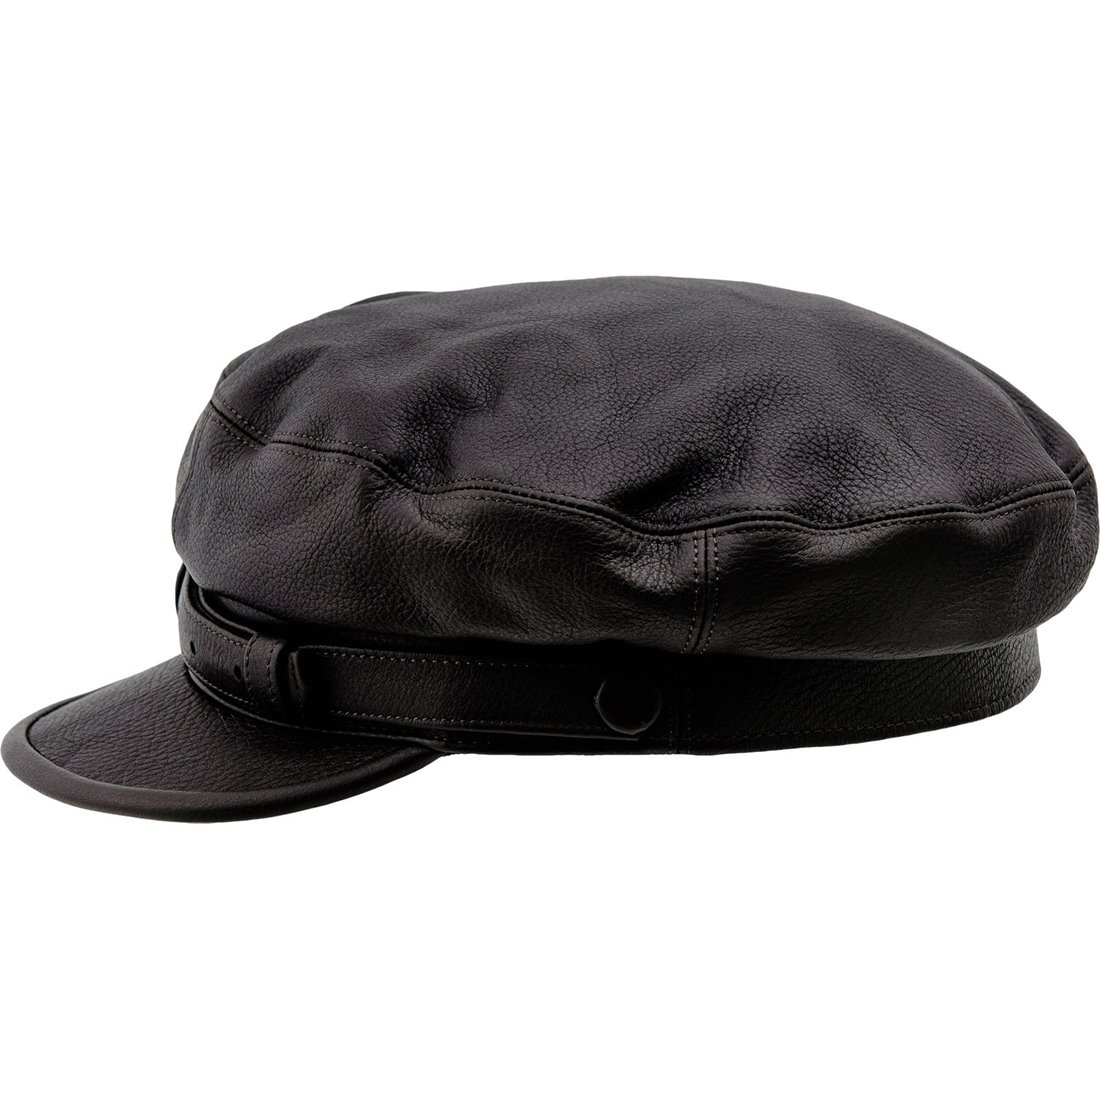 Maciejowka Model 8 - Genuine leather baseball cap. Aka breton Fiddler